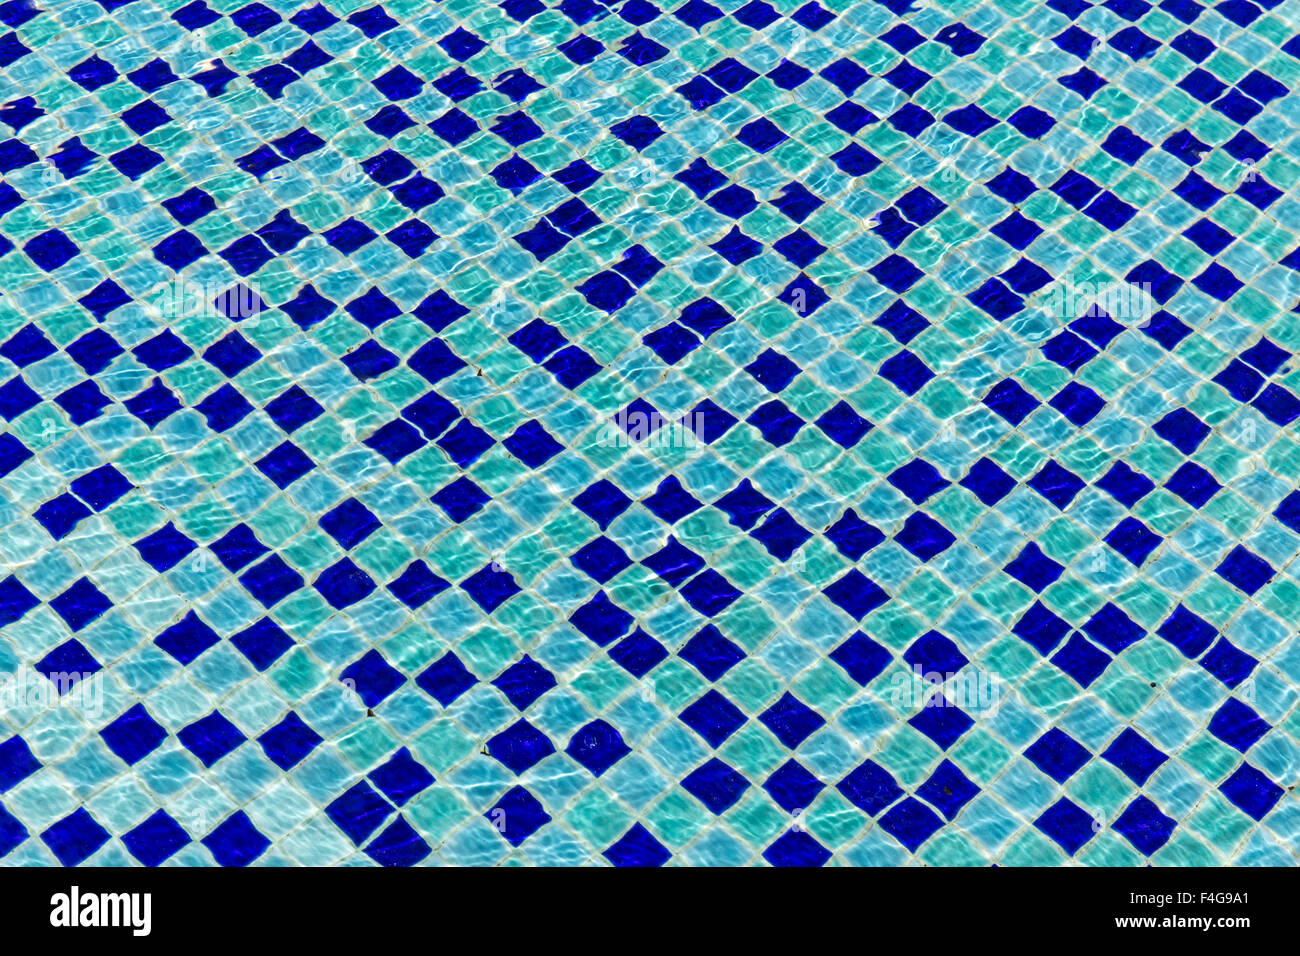 Dans la mosaïque de carreaux de céramique bleu piscine - seamless texture Banque D'Images